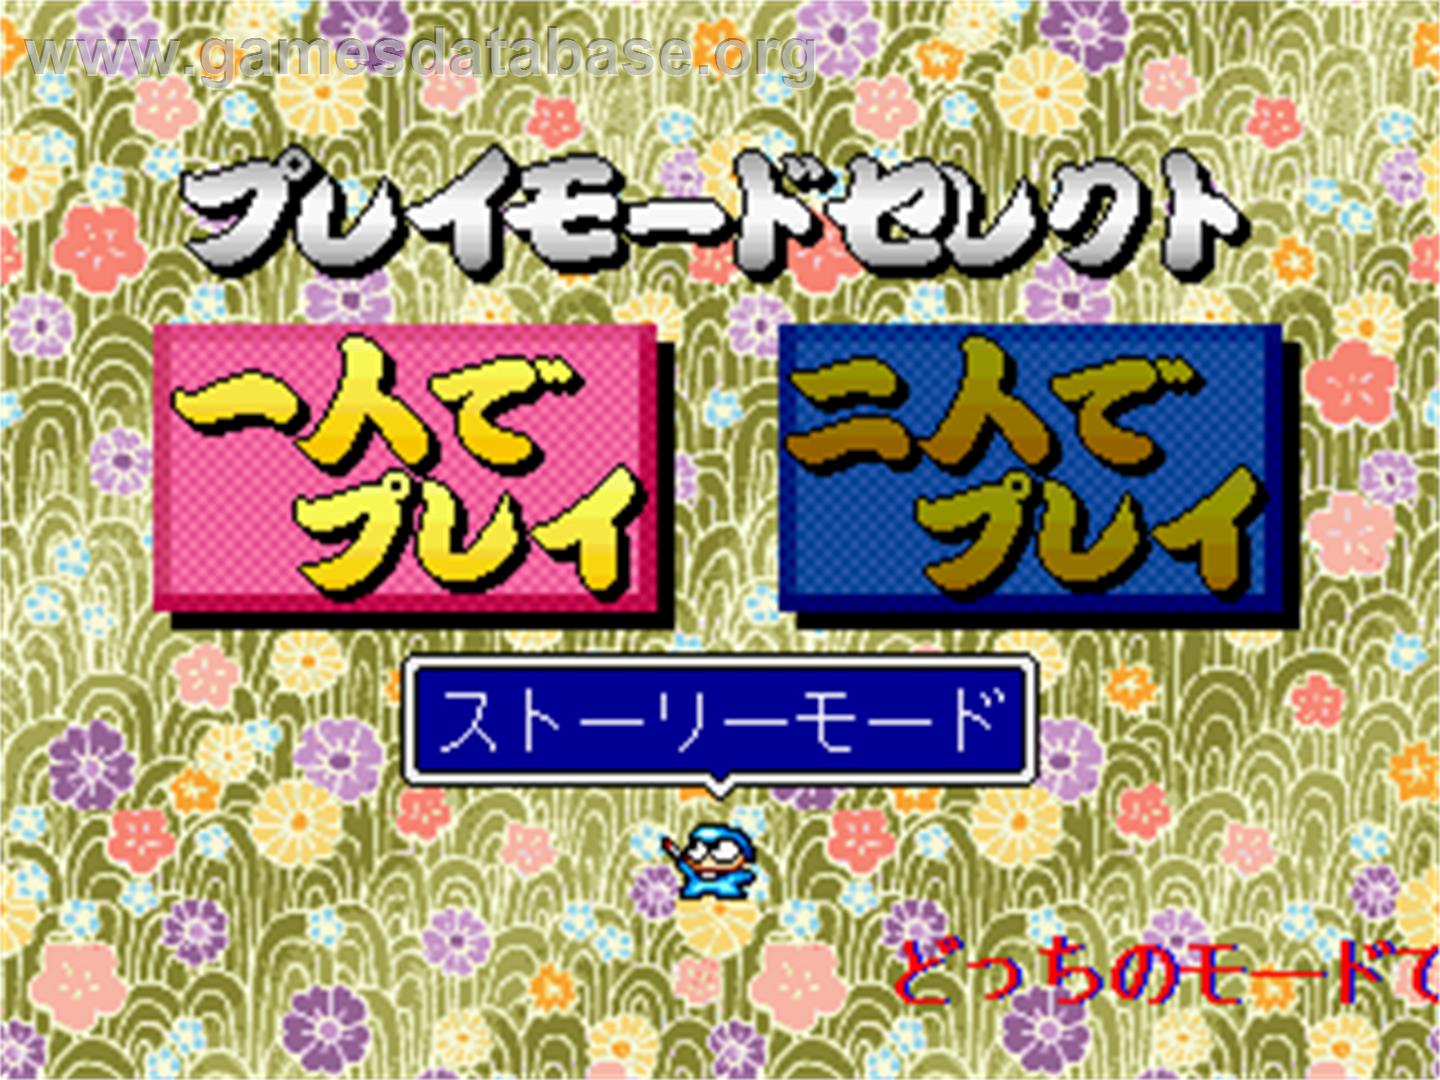 Kokontouzai Eto Monogatari - Arcade - Artwork - Select Screen